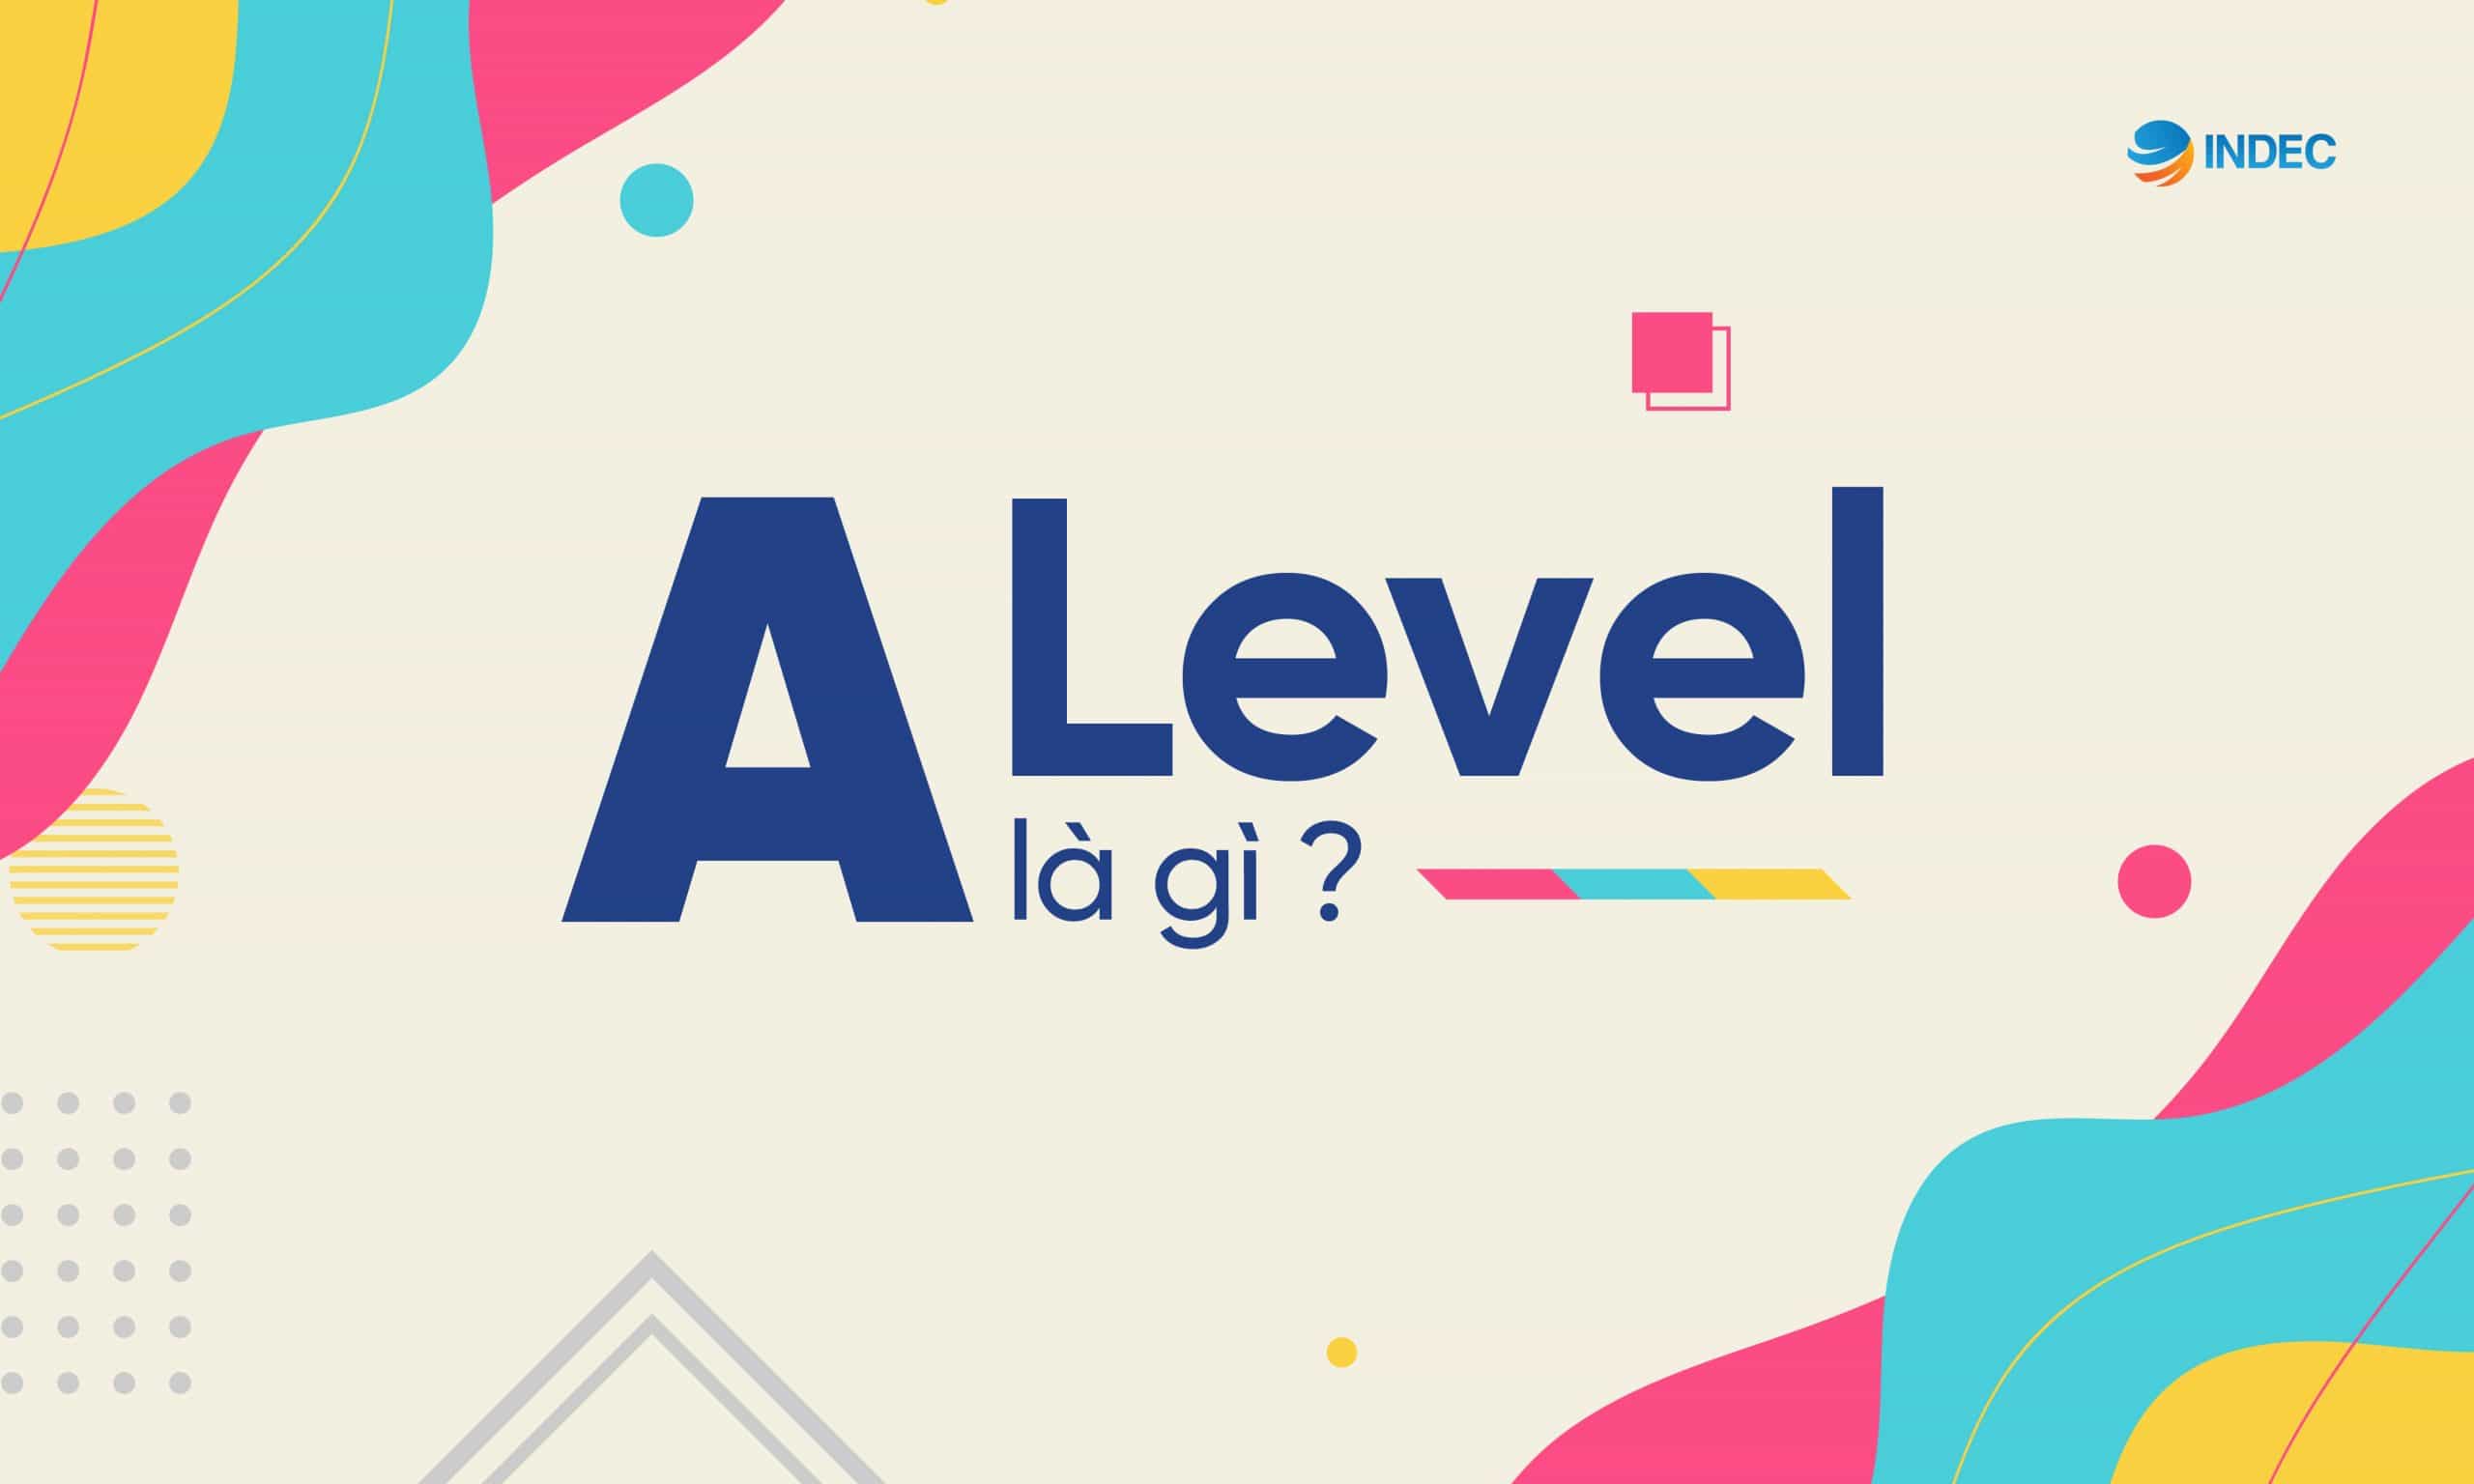 a level là gì